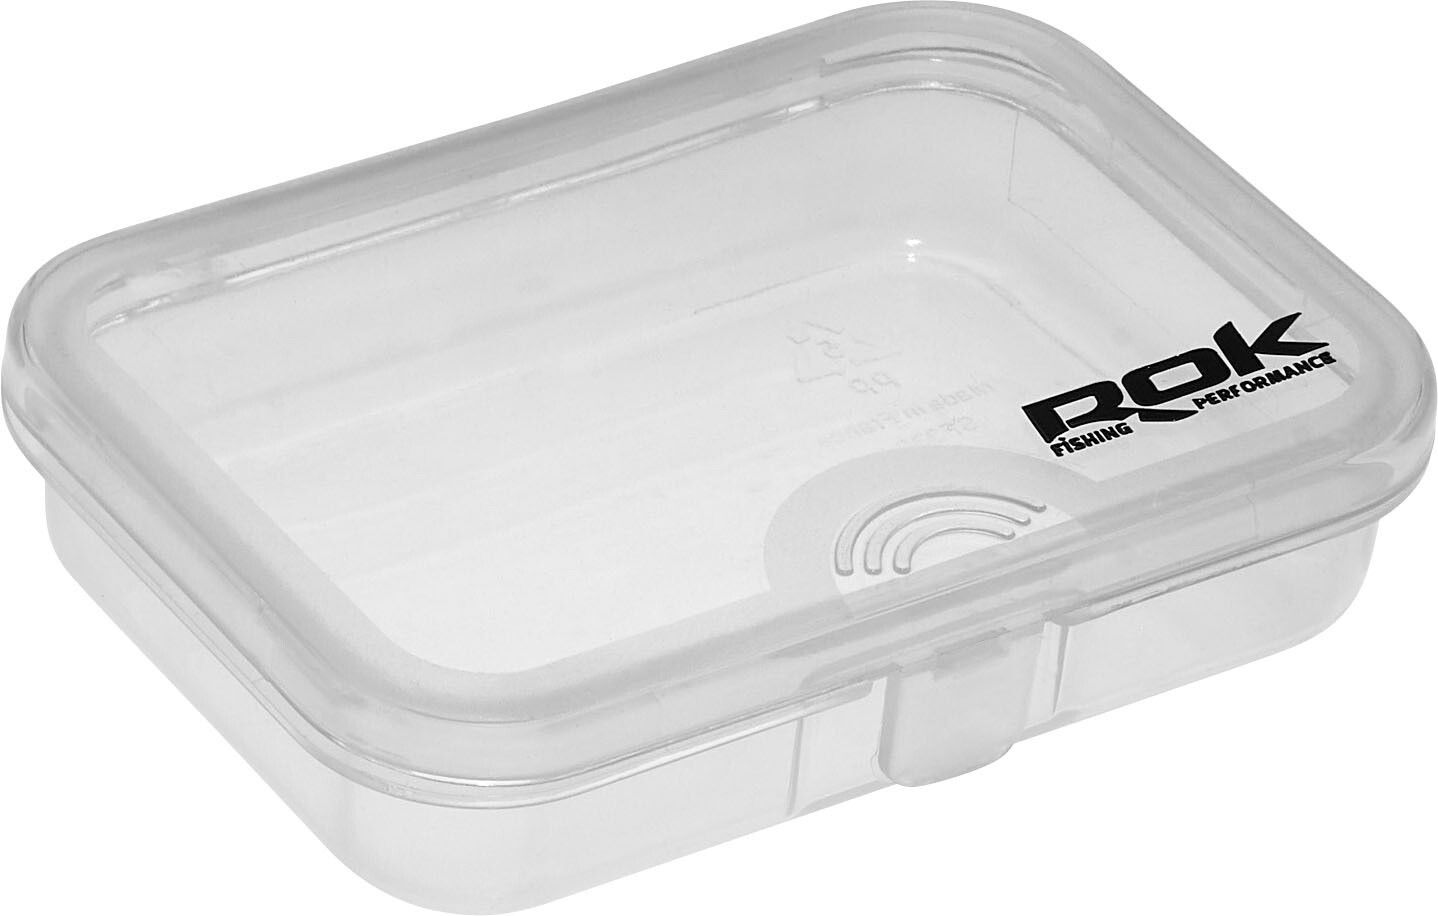 ROK STORAGE BOX XS301 - osztás nélküli mini tároló doboz - 9,1 cm x 6,6 cm x 2,2 cm